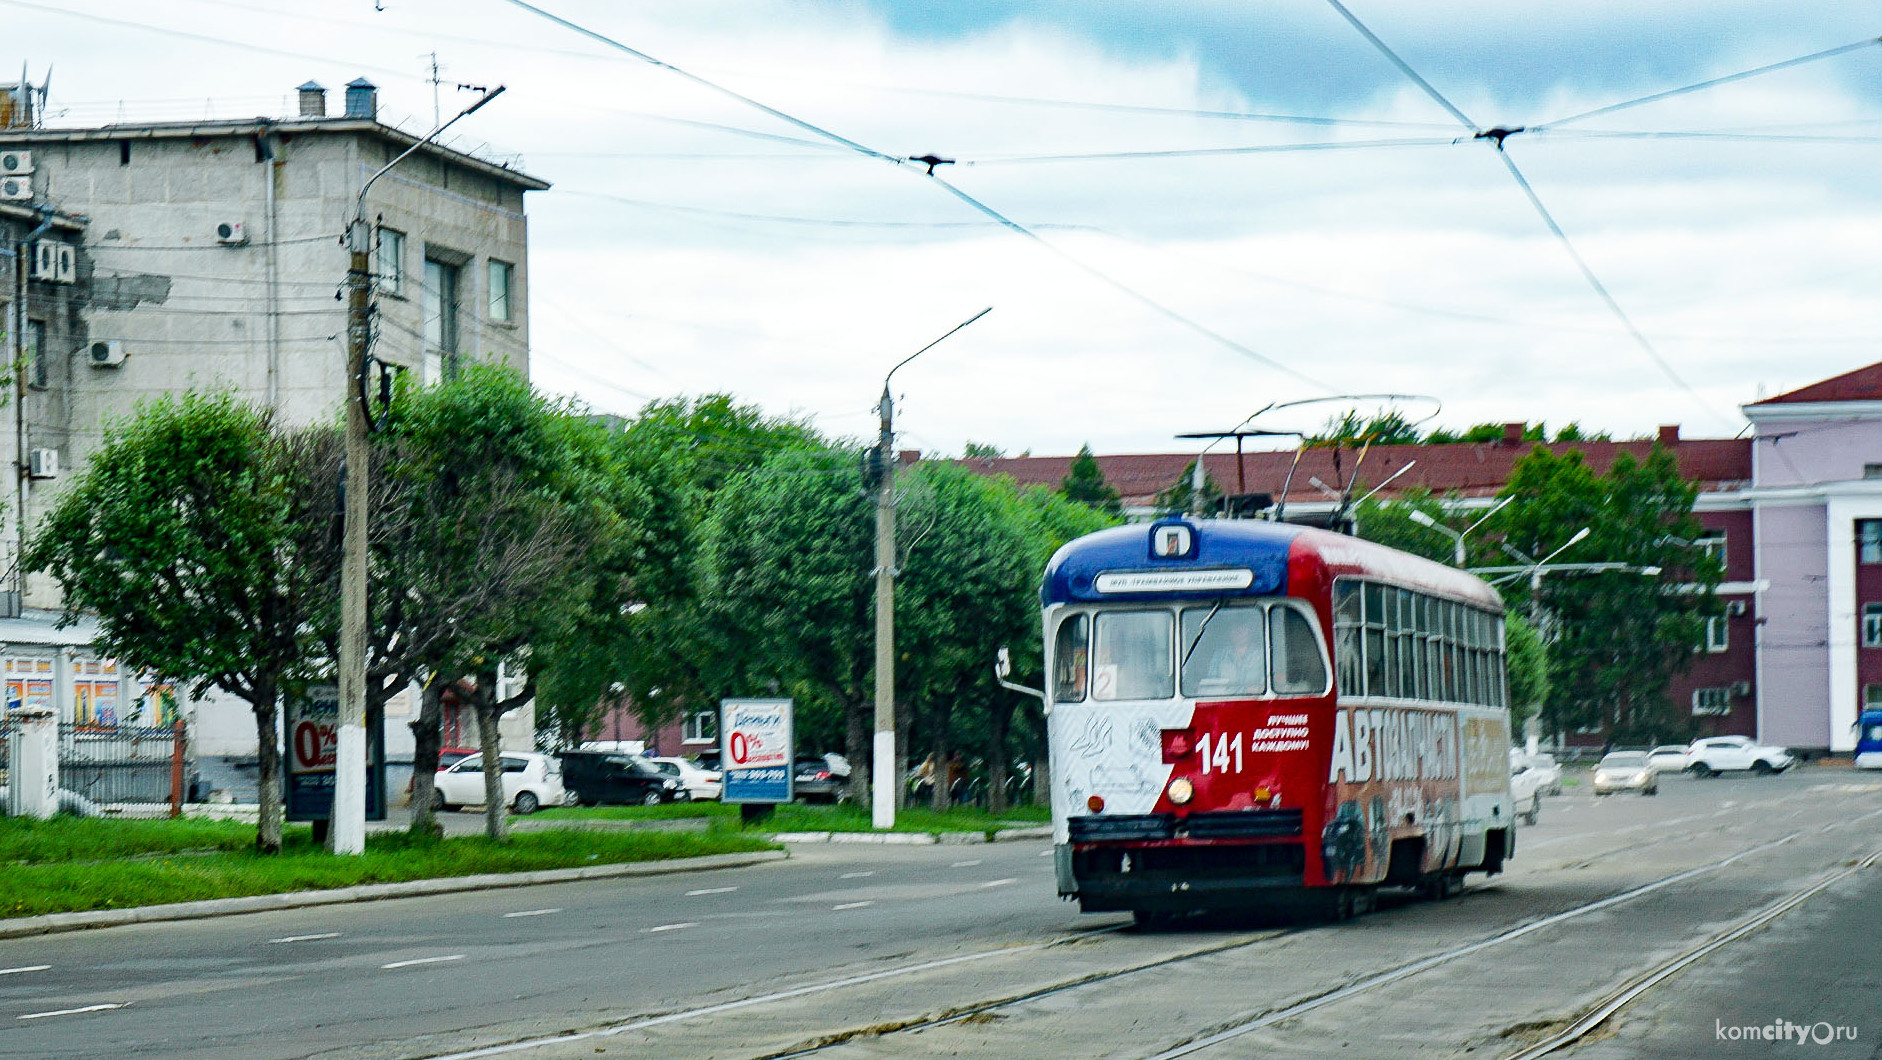 С сегодняшнего дня трамвайный билет стоит 25 рублей